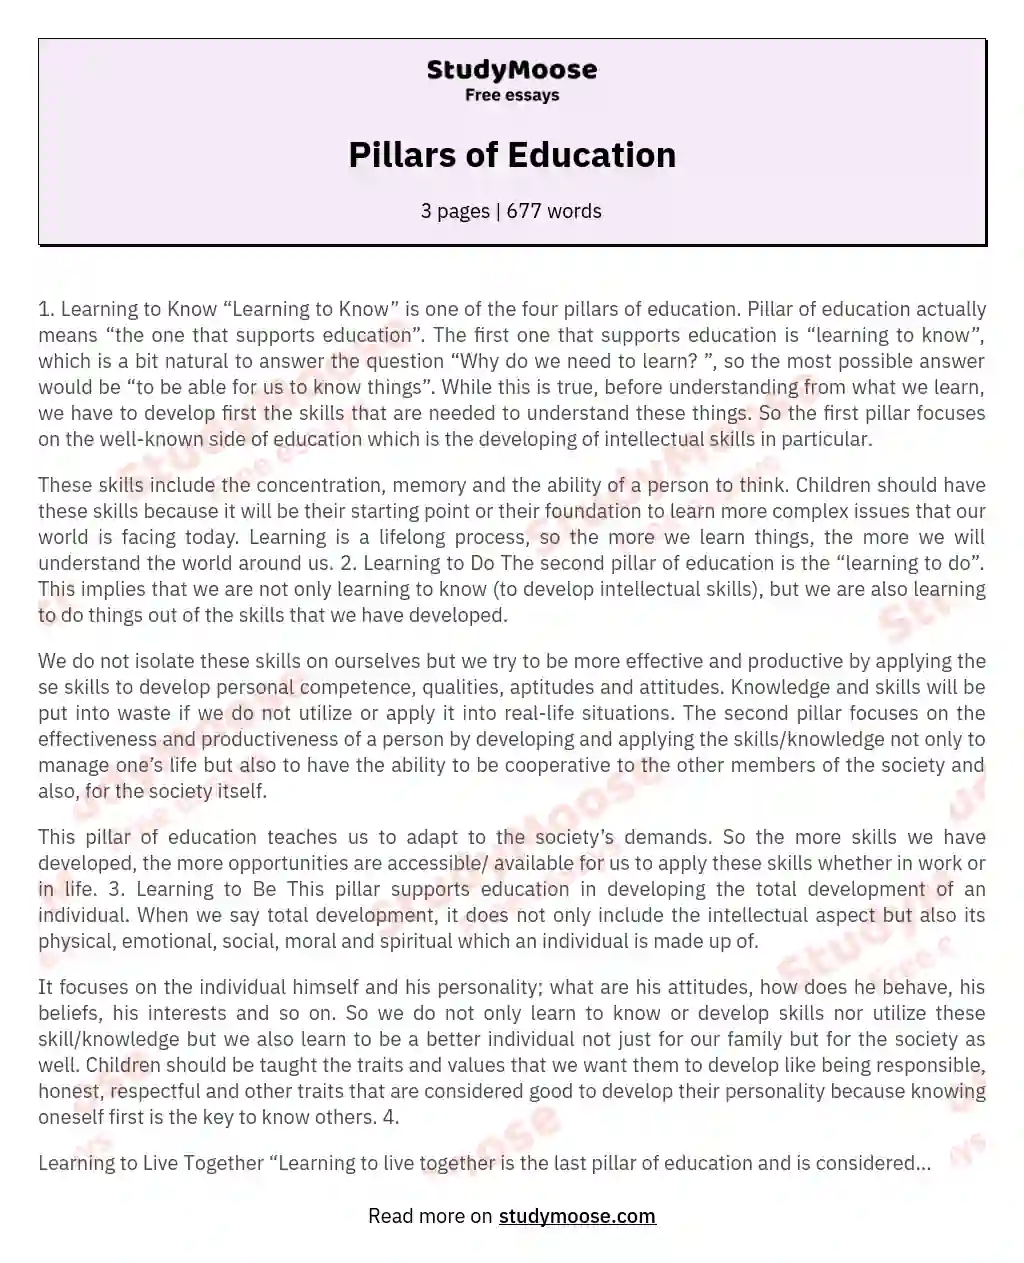 Pillars of Education essay